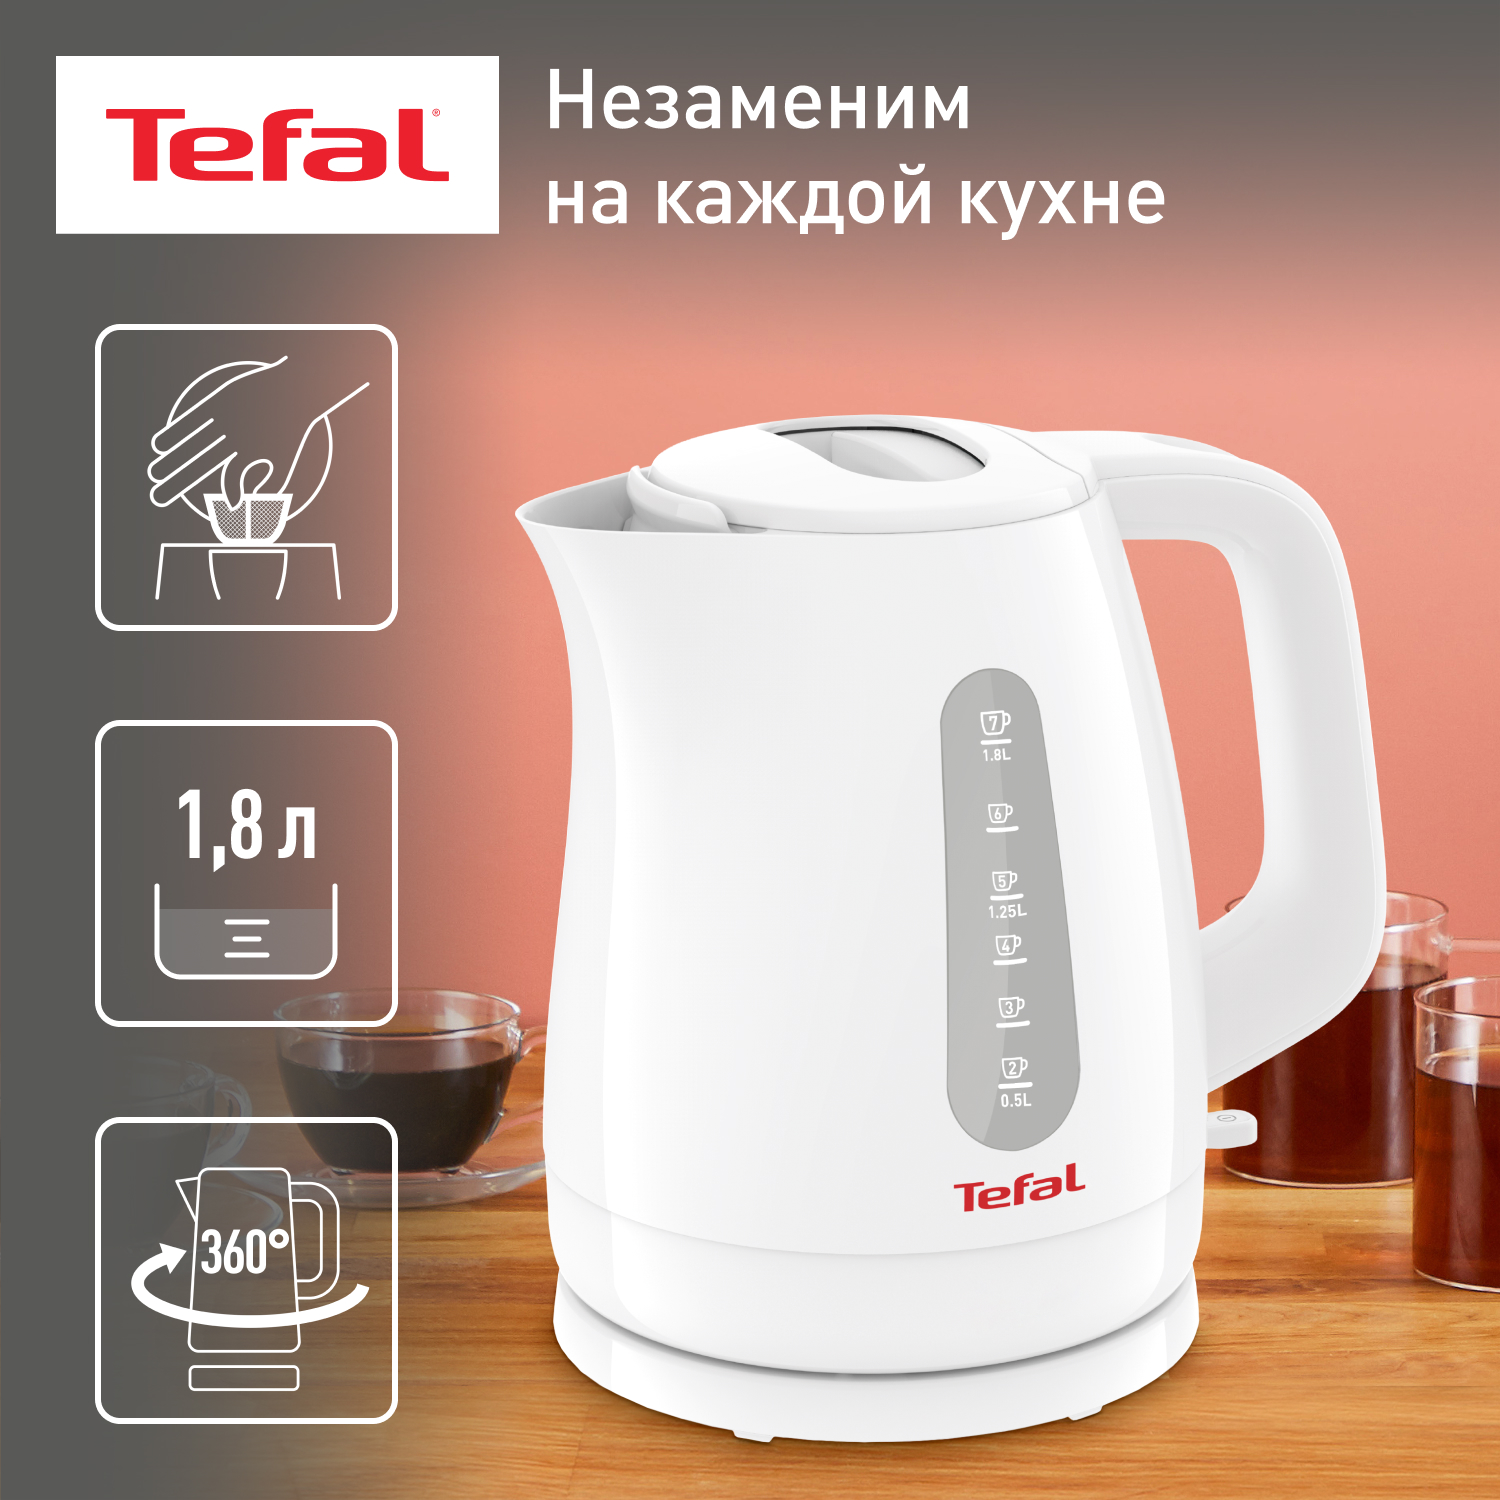 Чайник электрический Tefal KO172130 1.8 л белый, купить в Москве, цены в интернет-магазинах на Мегамаркет